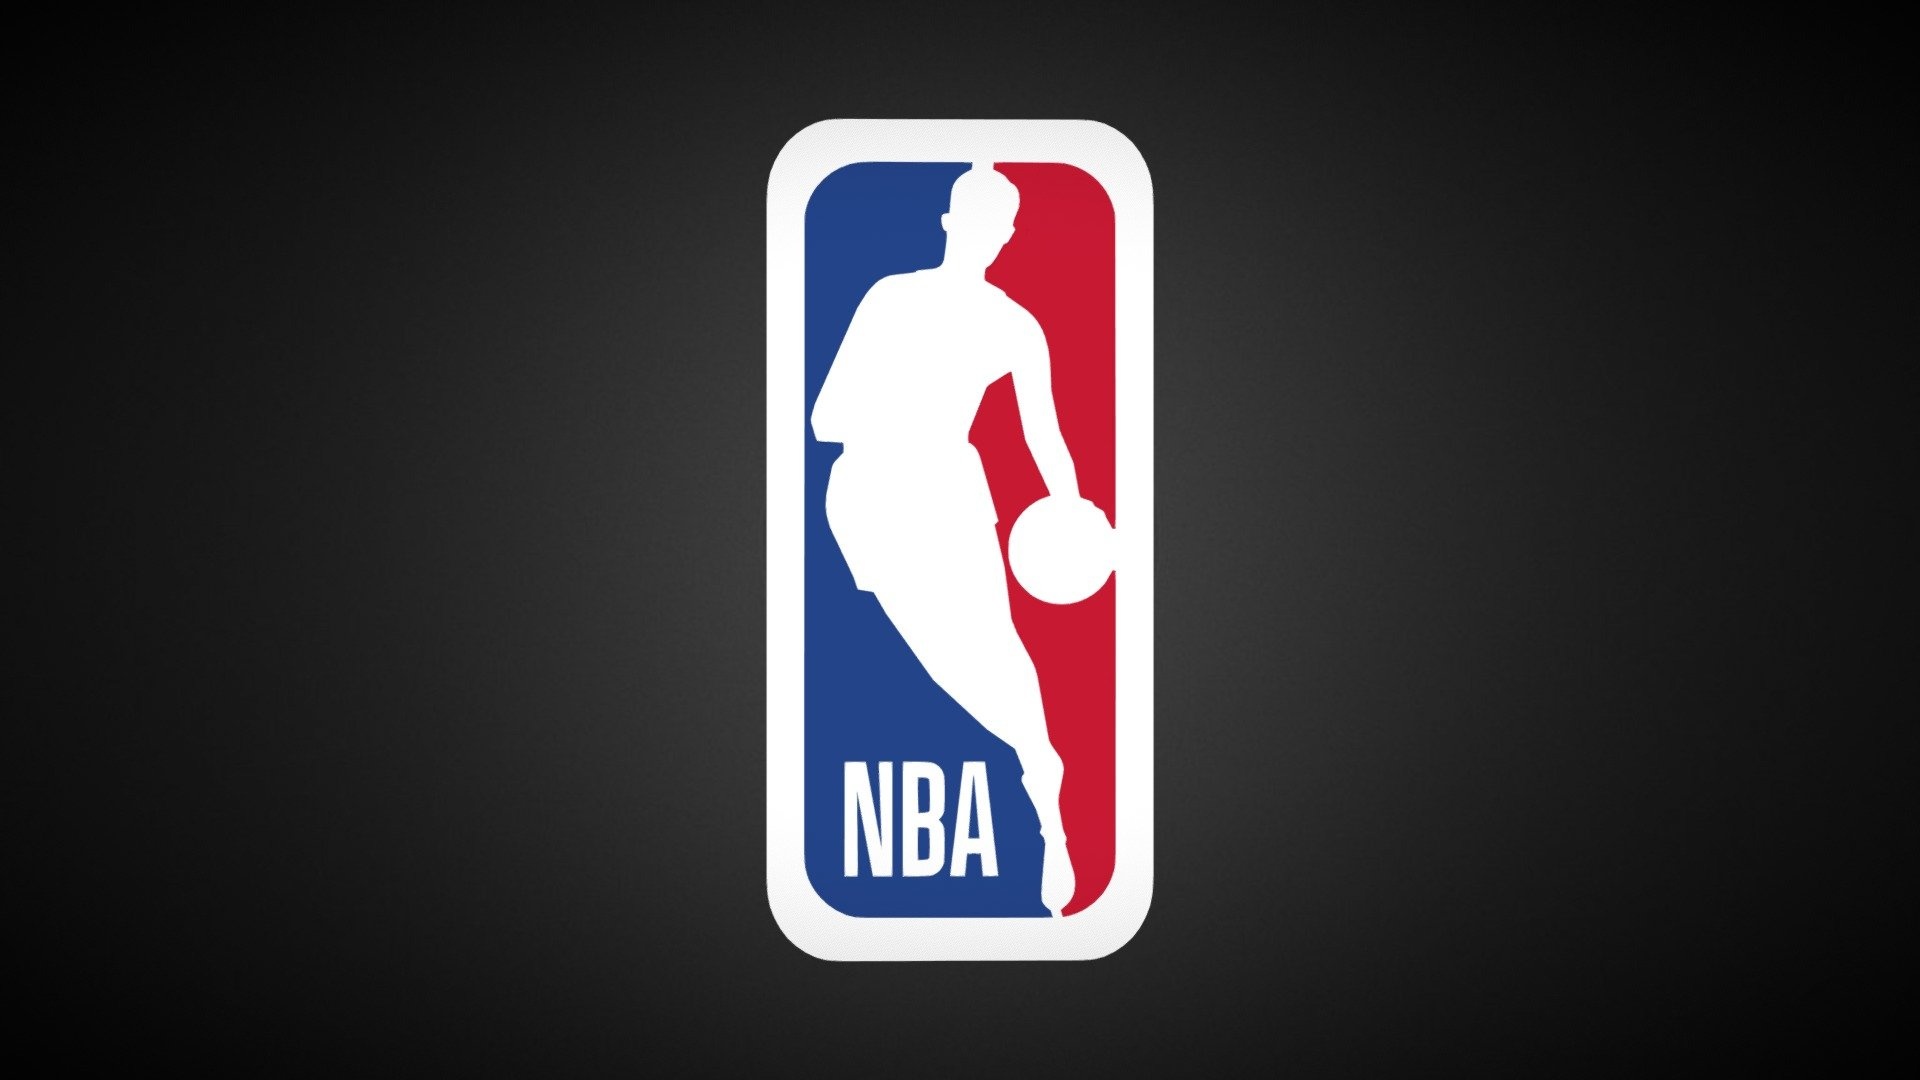 NBA logo 3D model, Digital design, Interactive visualization, Unique perspective, 1920x1080 Full HD Desktop